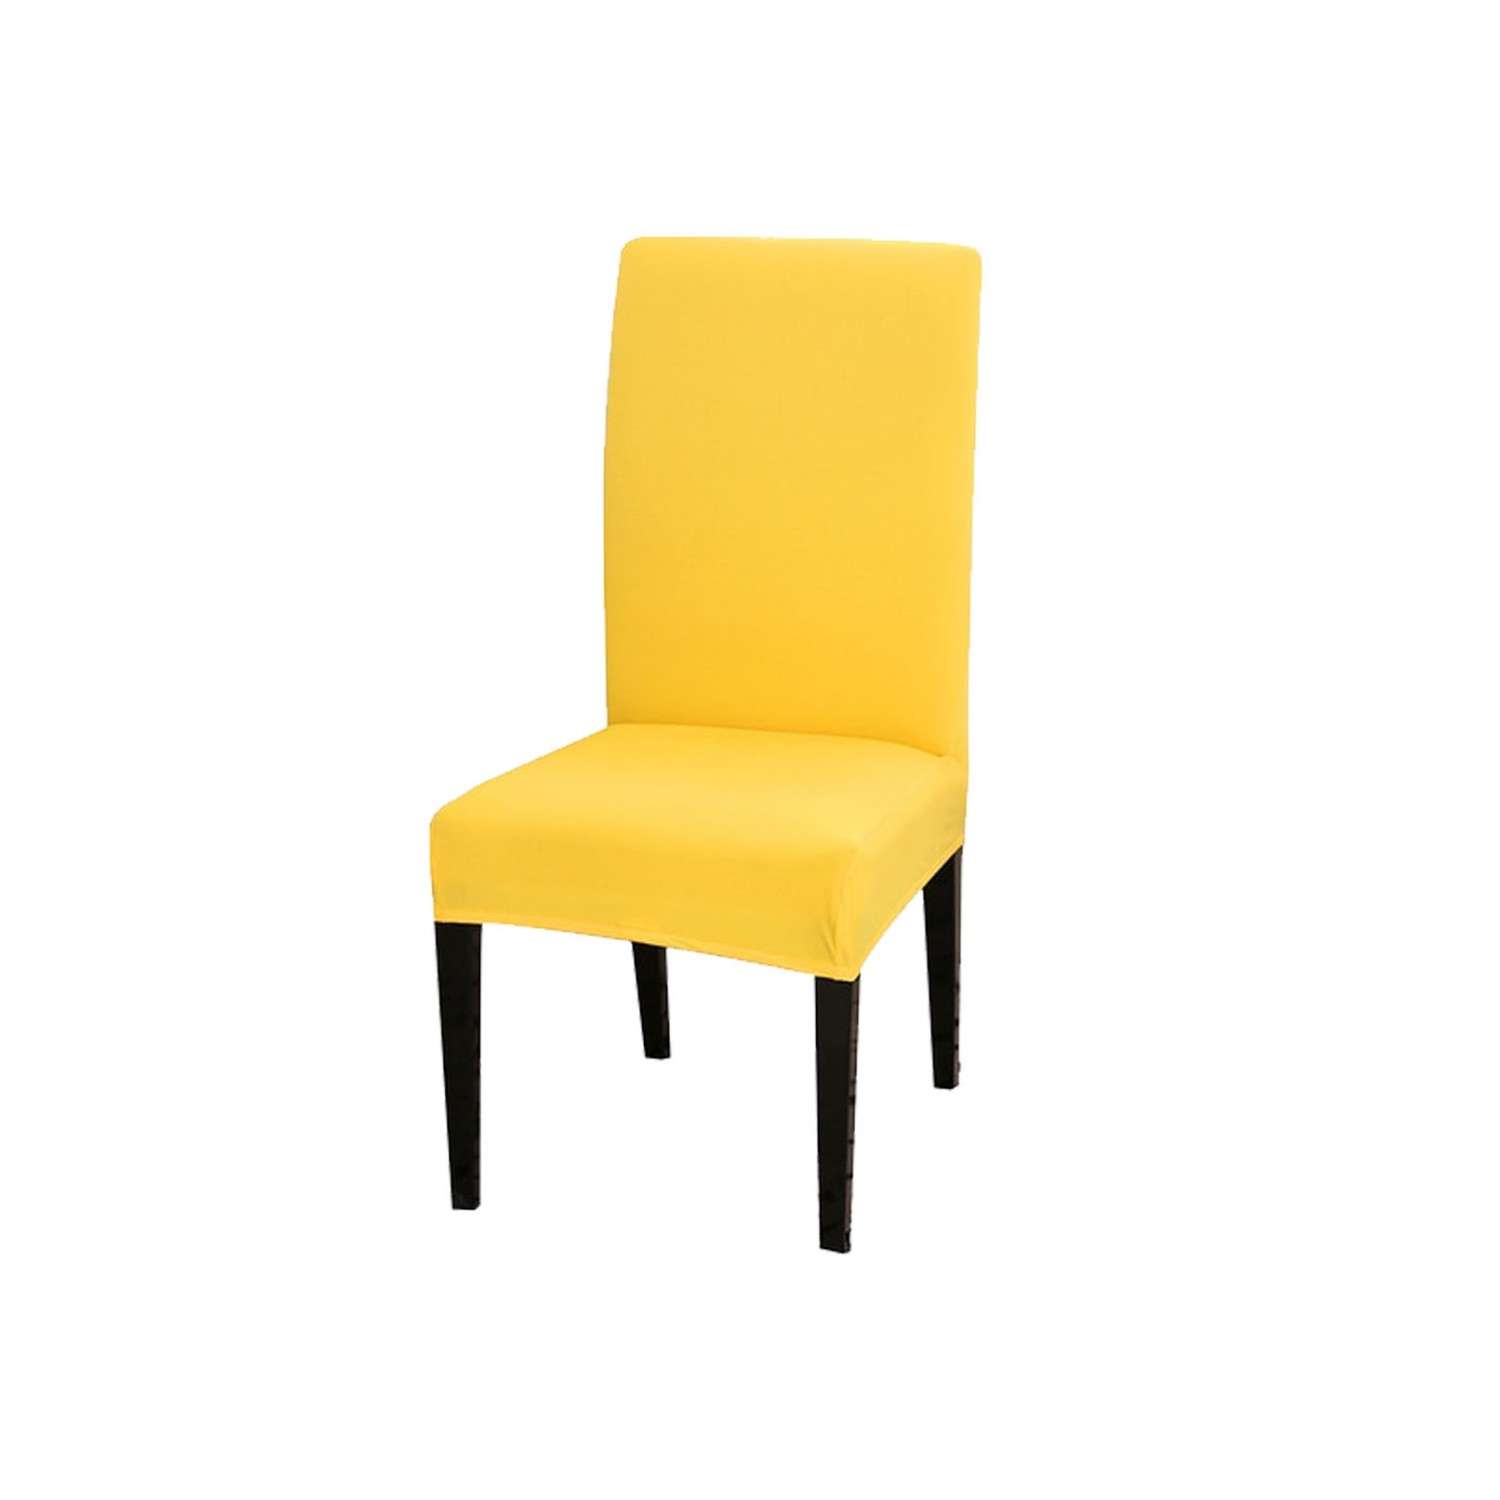 Чехол на стул LuxAlto Коллекция Jersey цвет желтый - фото 1